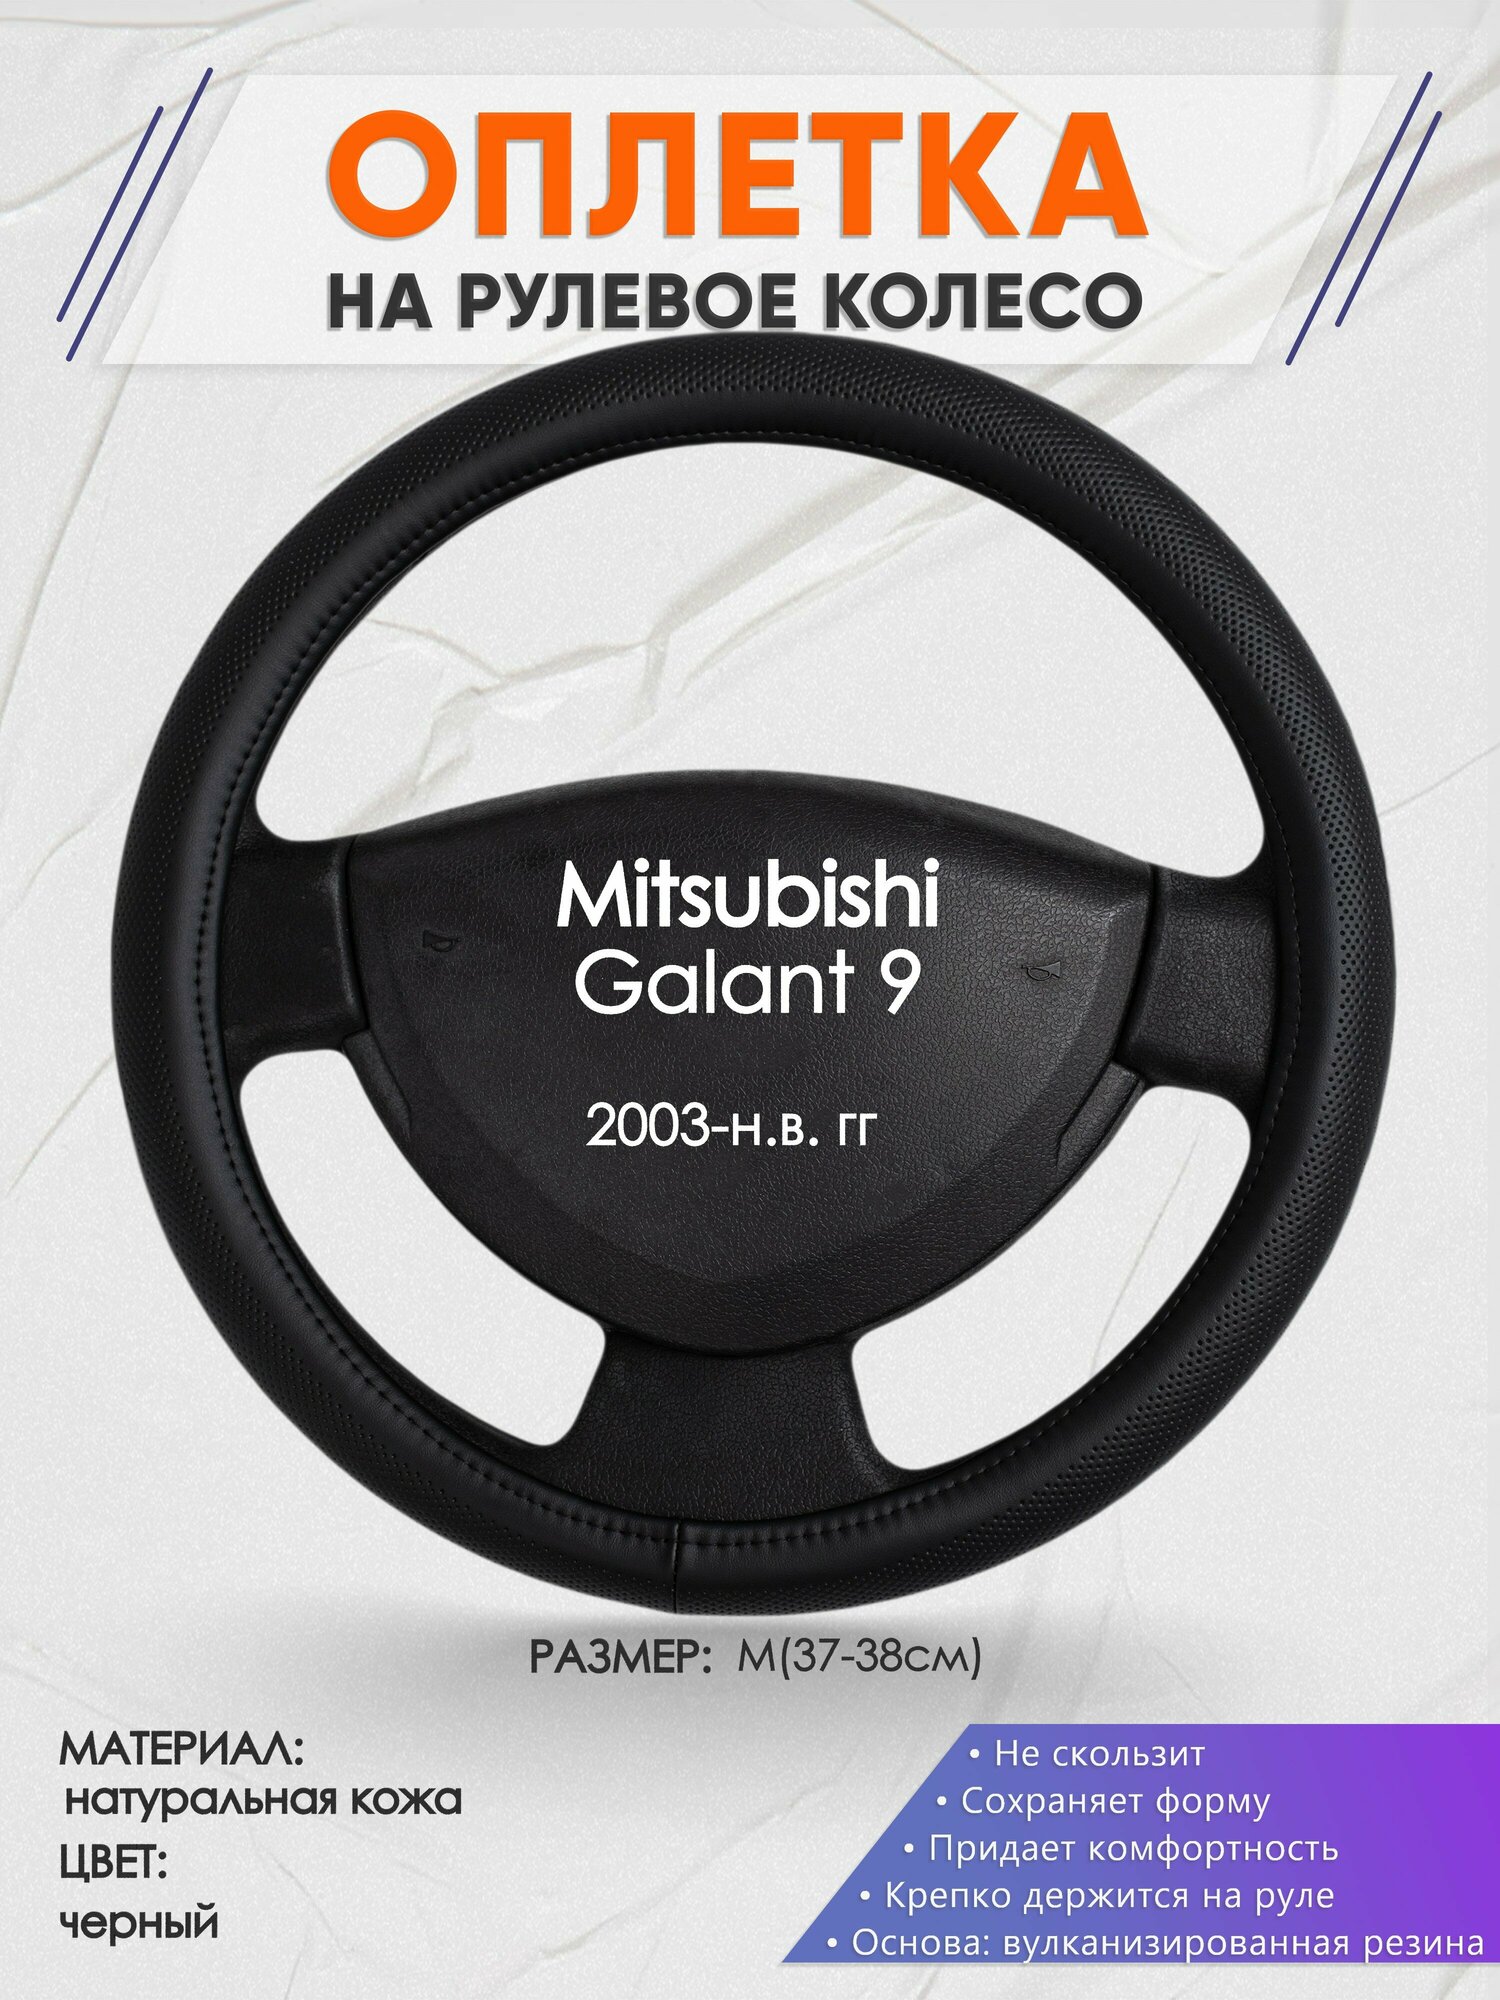 Оплетка на руль для Mitsubishi Galant 9(Митсубиси Галант 9) 2003-н. в M(37-38см) Натуральная кожа 28